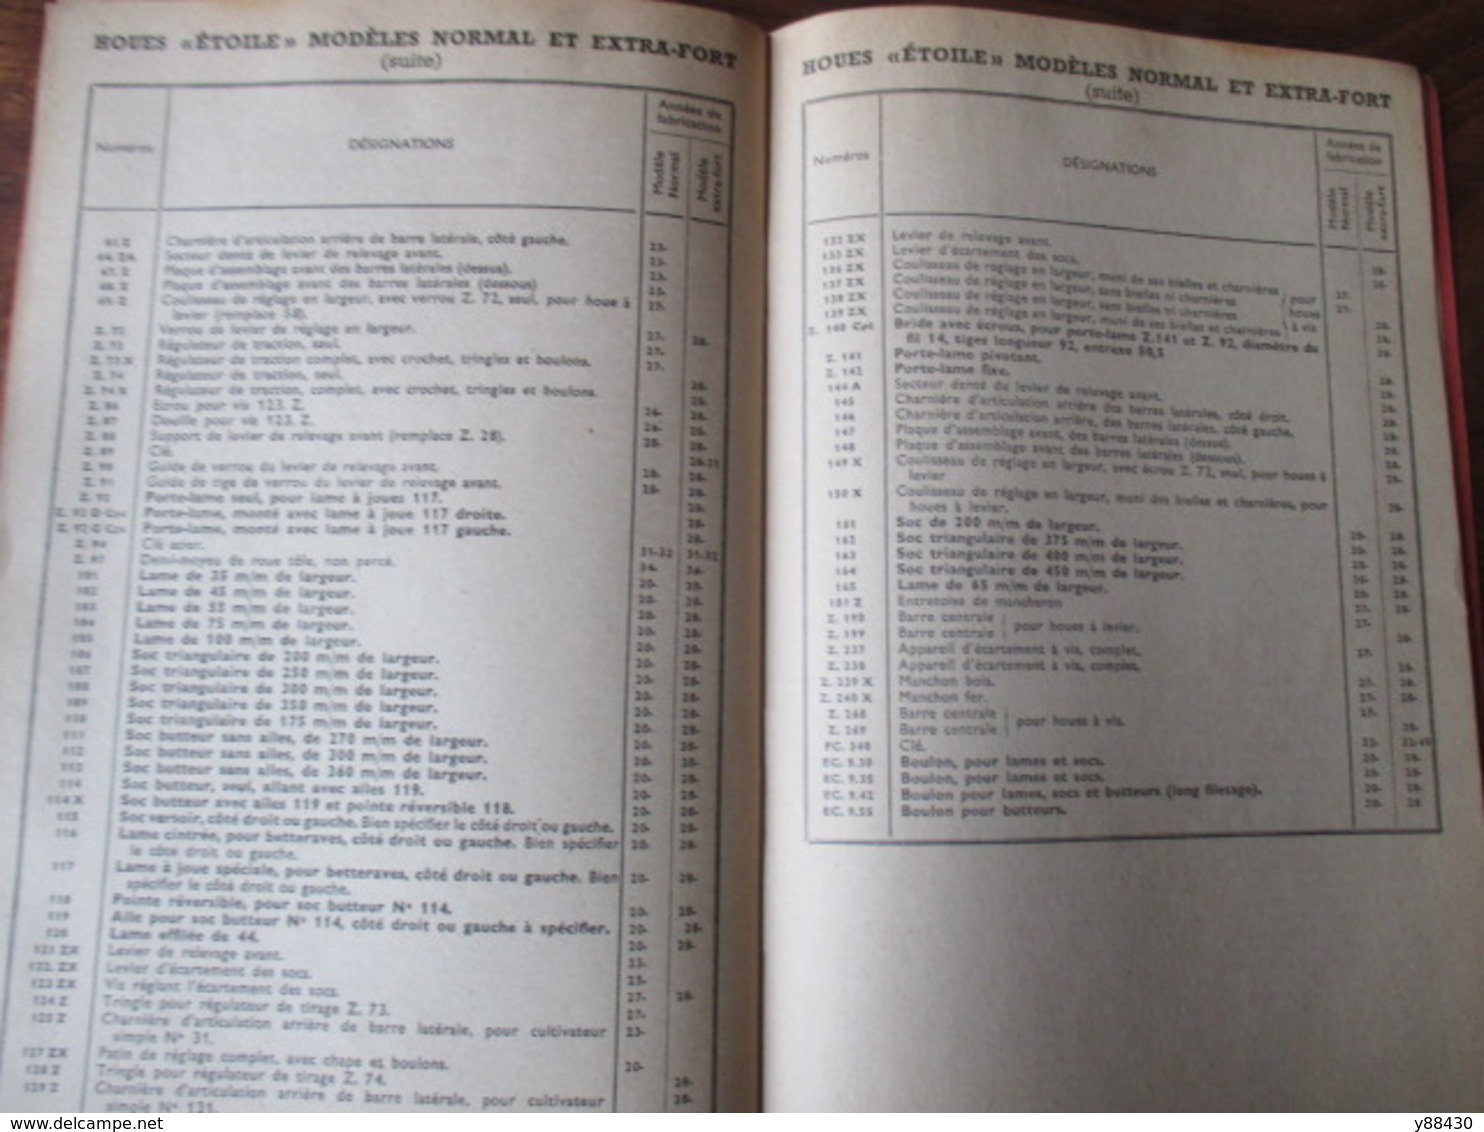 Livret pour PIECES DE RECHANGES  machines agricole - Ets. C. PUZENAT à BOURBON LANCY - année 1952 - 52 pages - 21 photos